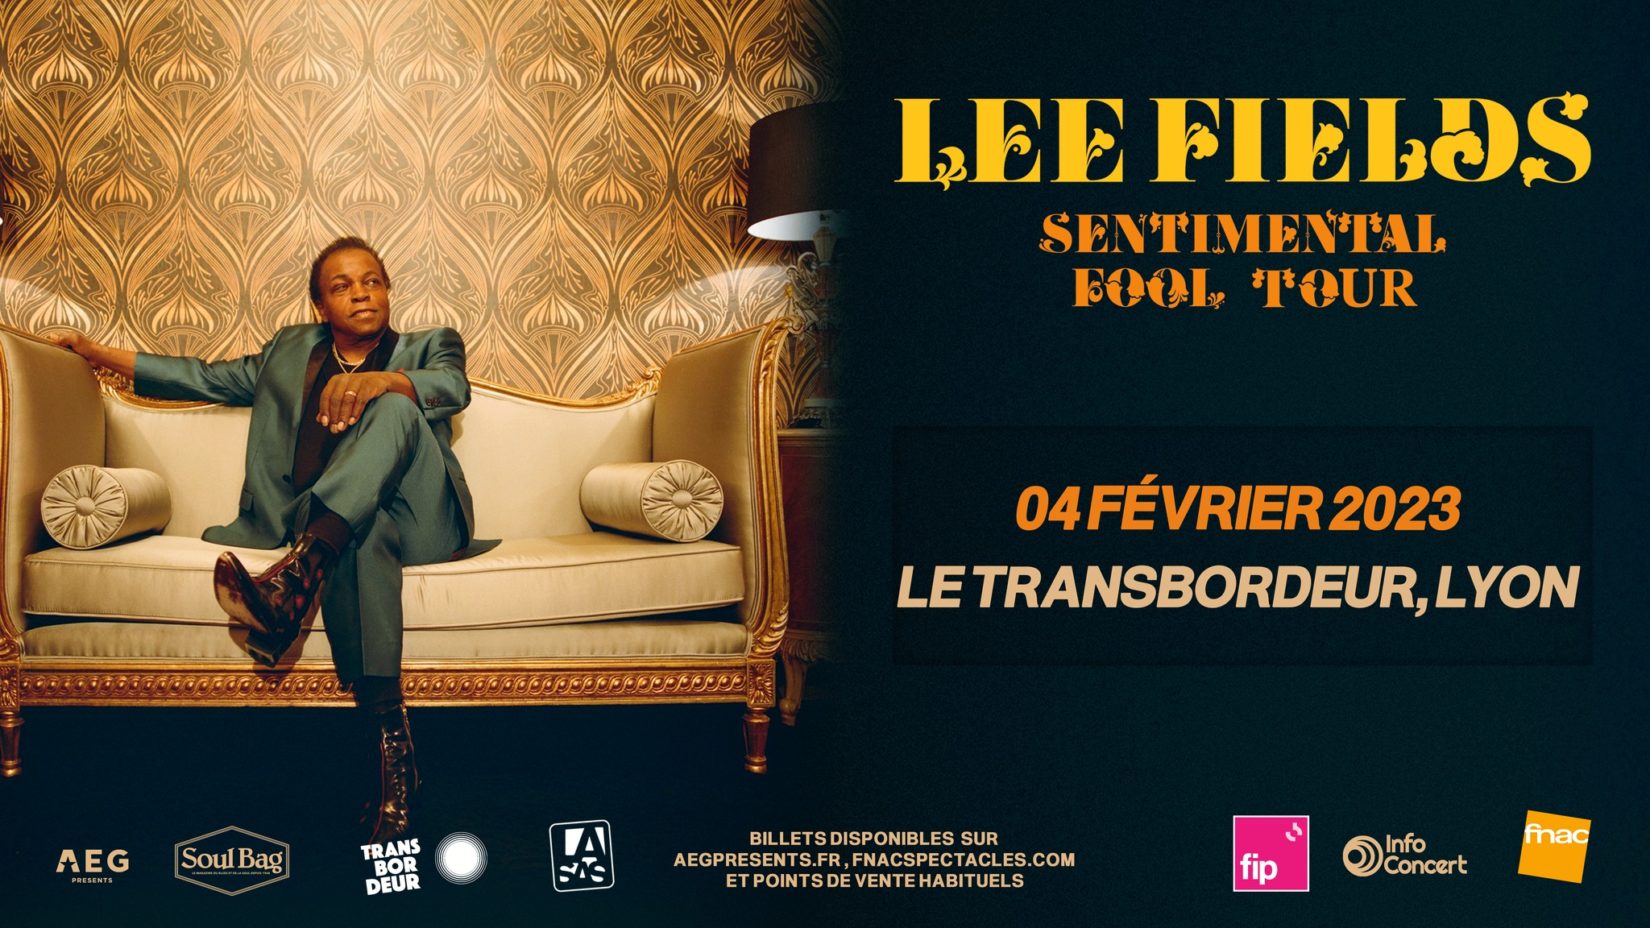 Lee Fields en concert | Le Transbordeur, Lyon